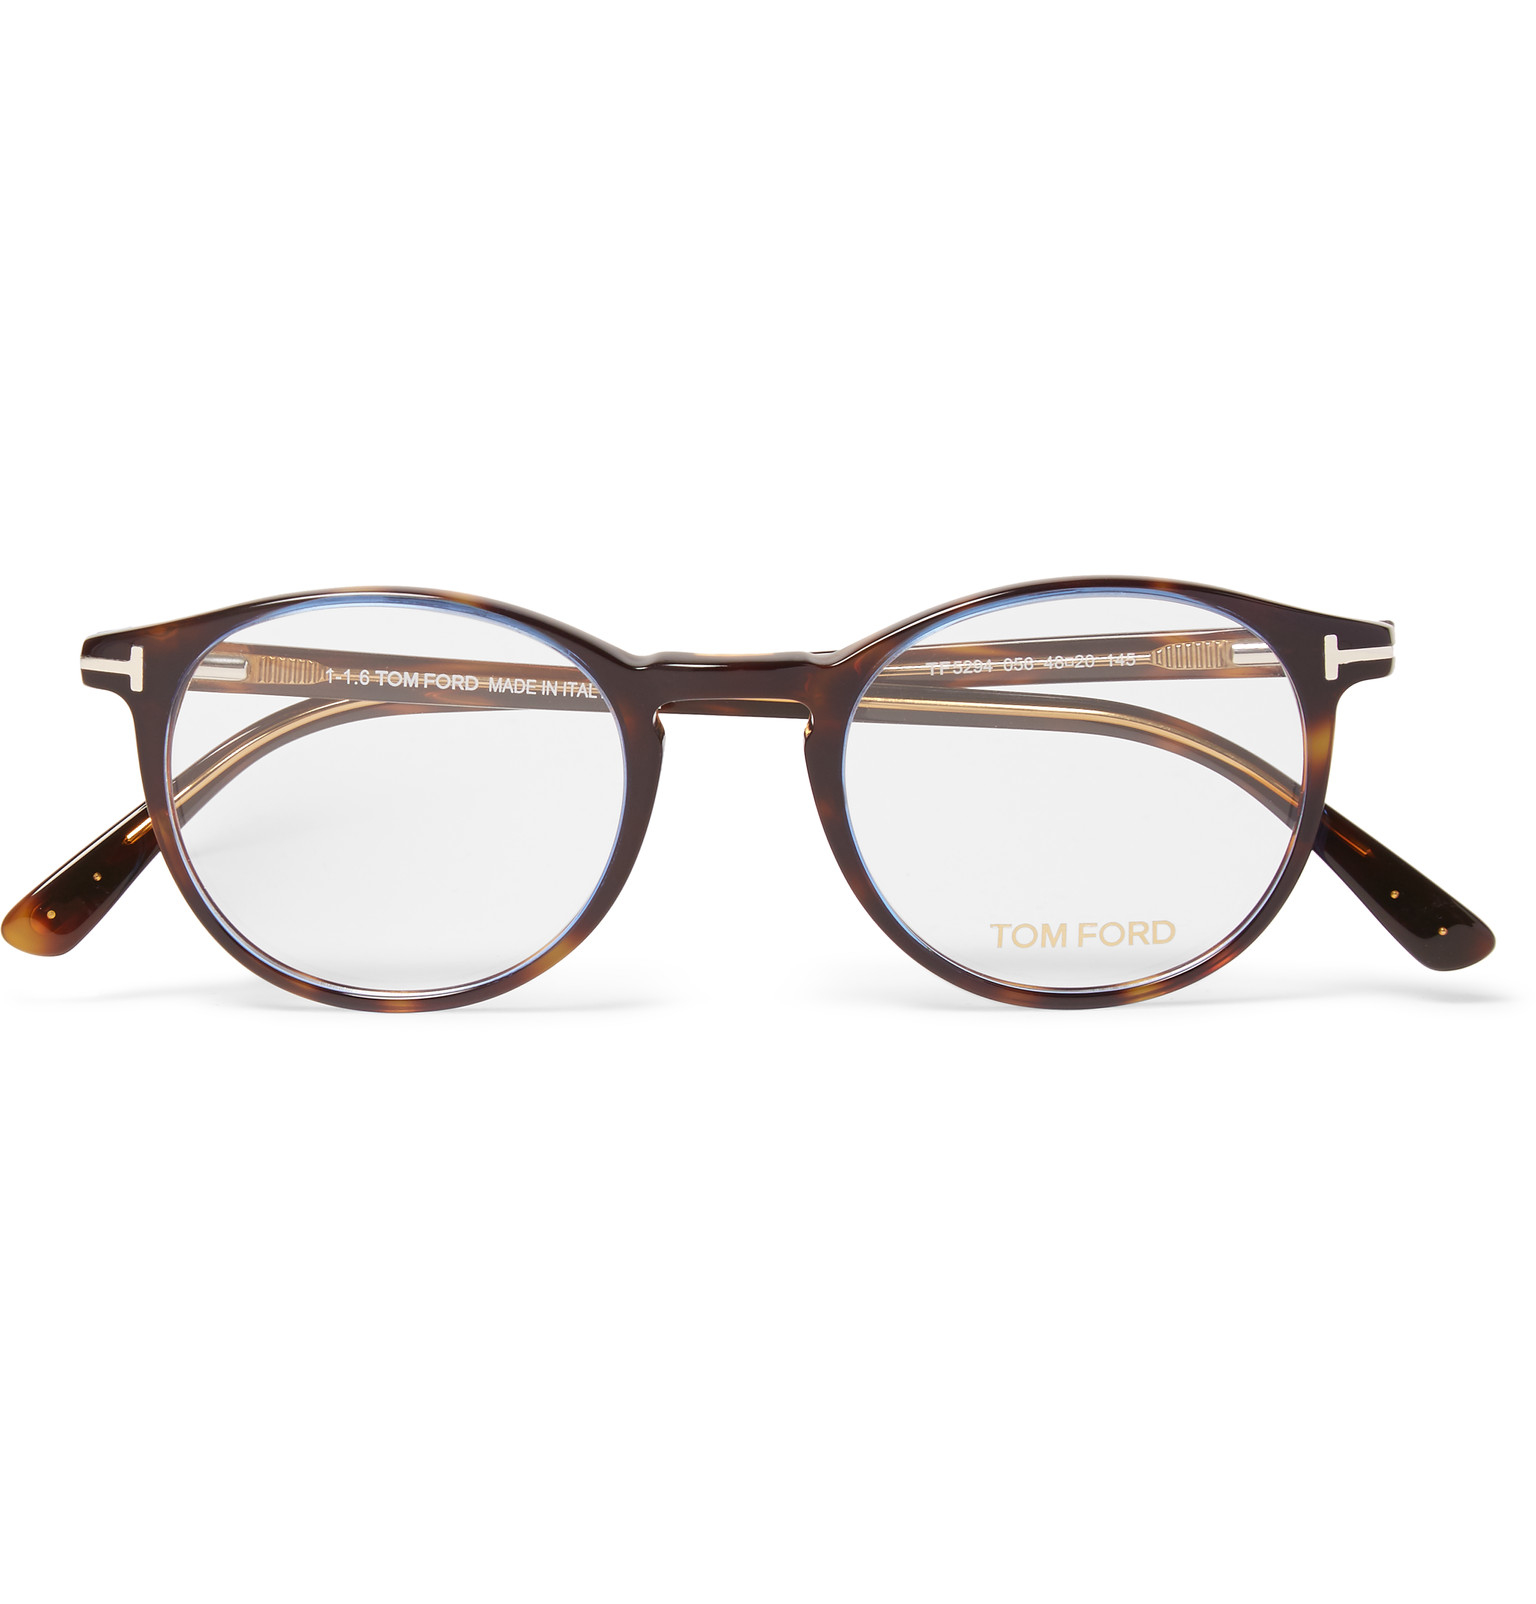 Tom Ford Round Frame Tortoiseshell Acetate Optical Glasses For Men Lyst